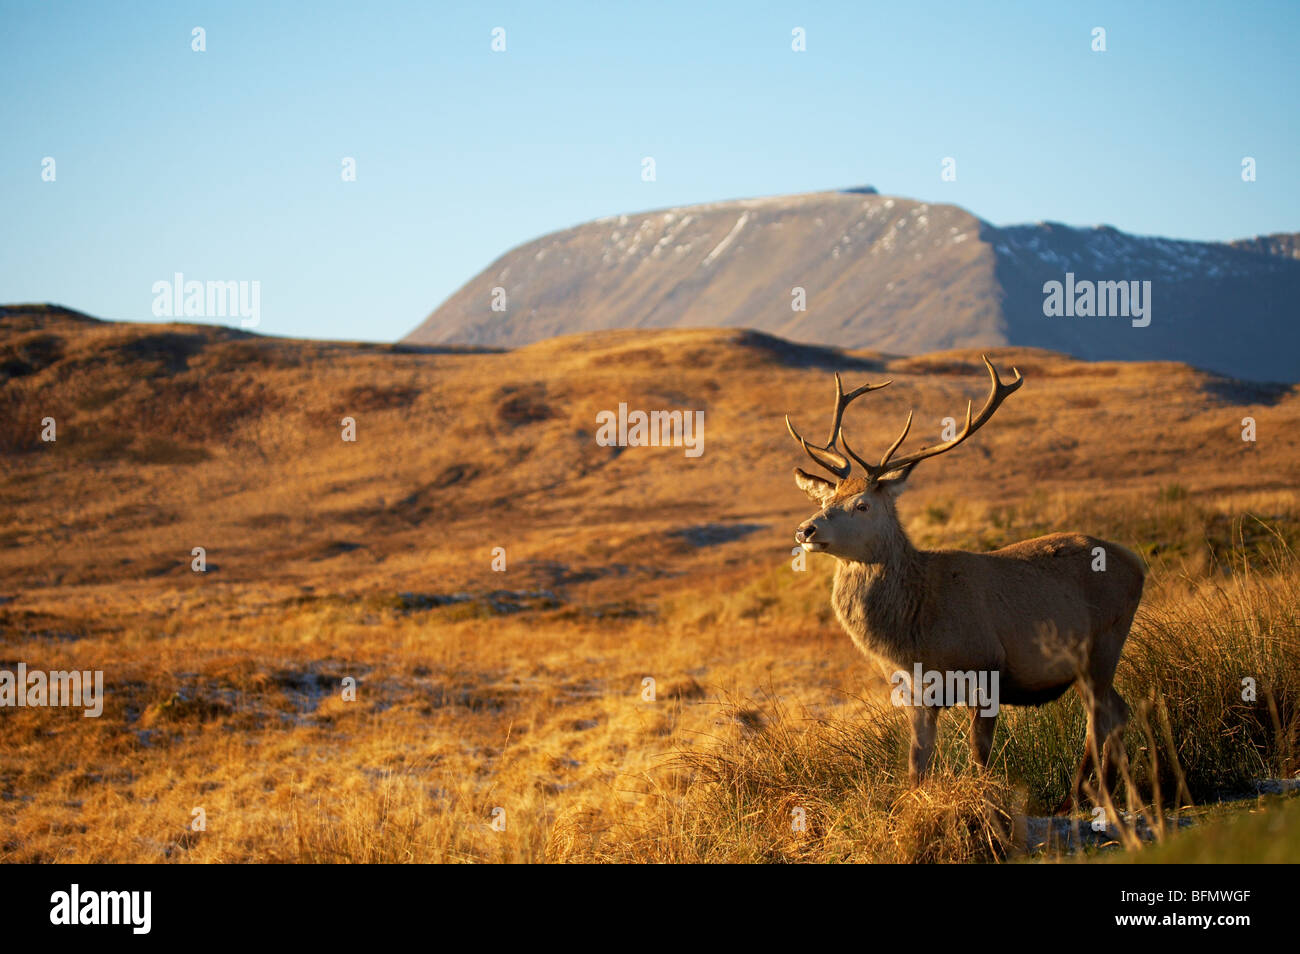 Das freundliche wilden Rotwild Hirsch mit dem Spitznamen Big Boy von einer Layby in der Nähe schwarzer Berg in der schottischen Landschaft Stockfoto